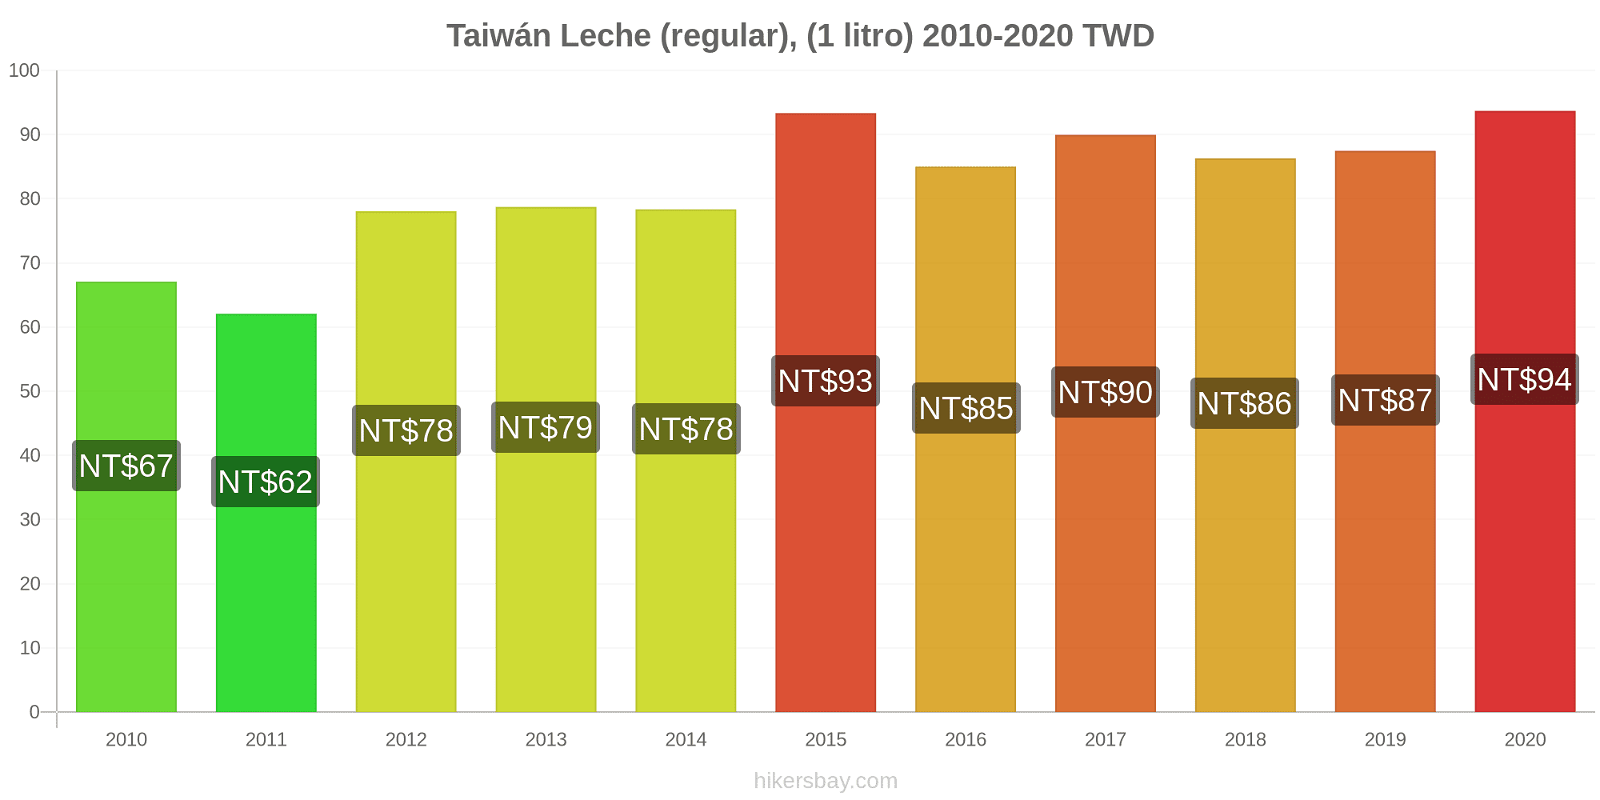 Taiwán cambios de precios Leche (Regular), (1 litro) hikersbay.com